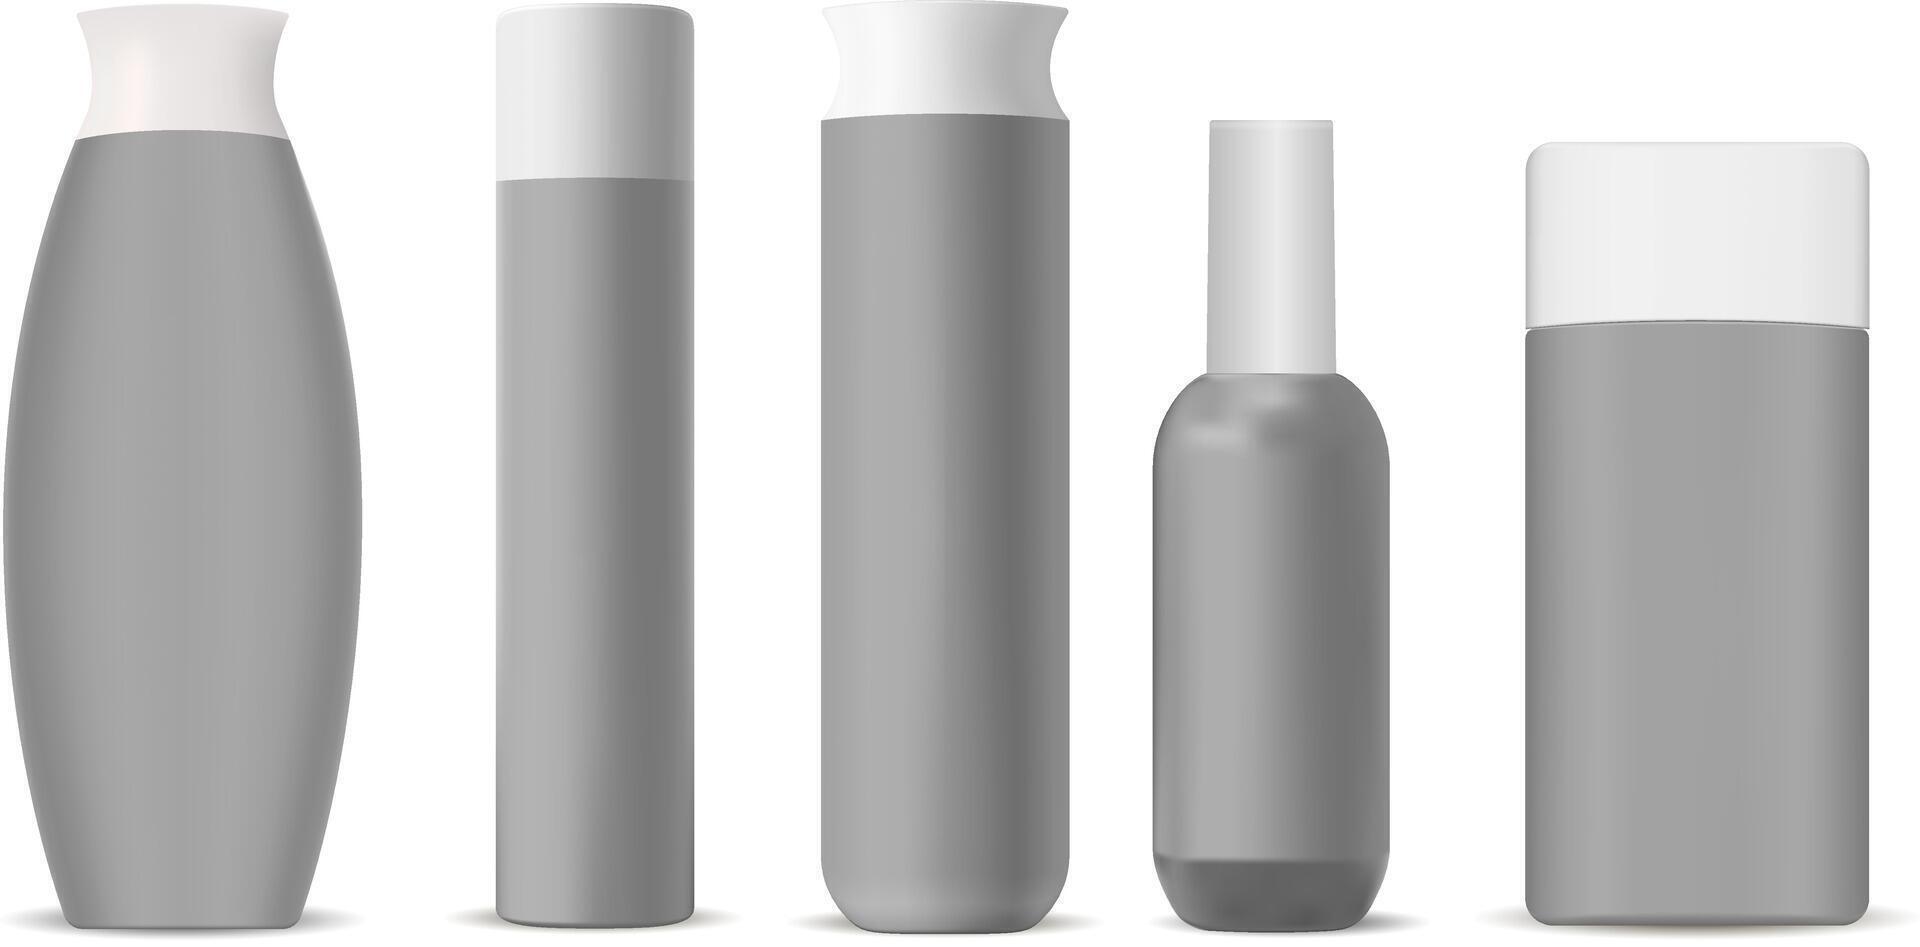 kosmetisk flaskor attrapp packa. uppsättning av modern form kosmetisk Produkter förpackning behållare för annorlunda Produkter. 3d illustration. vektor